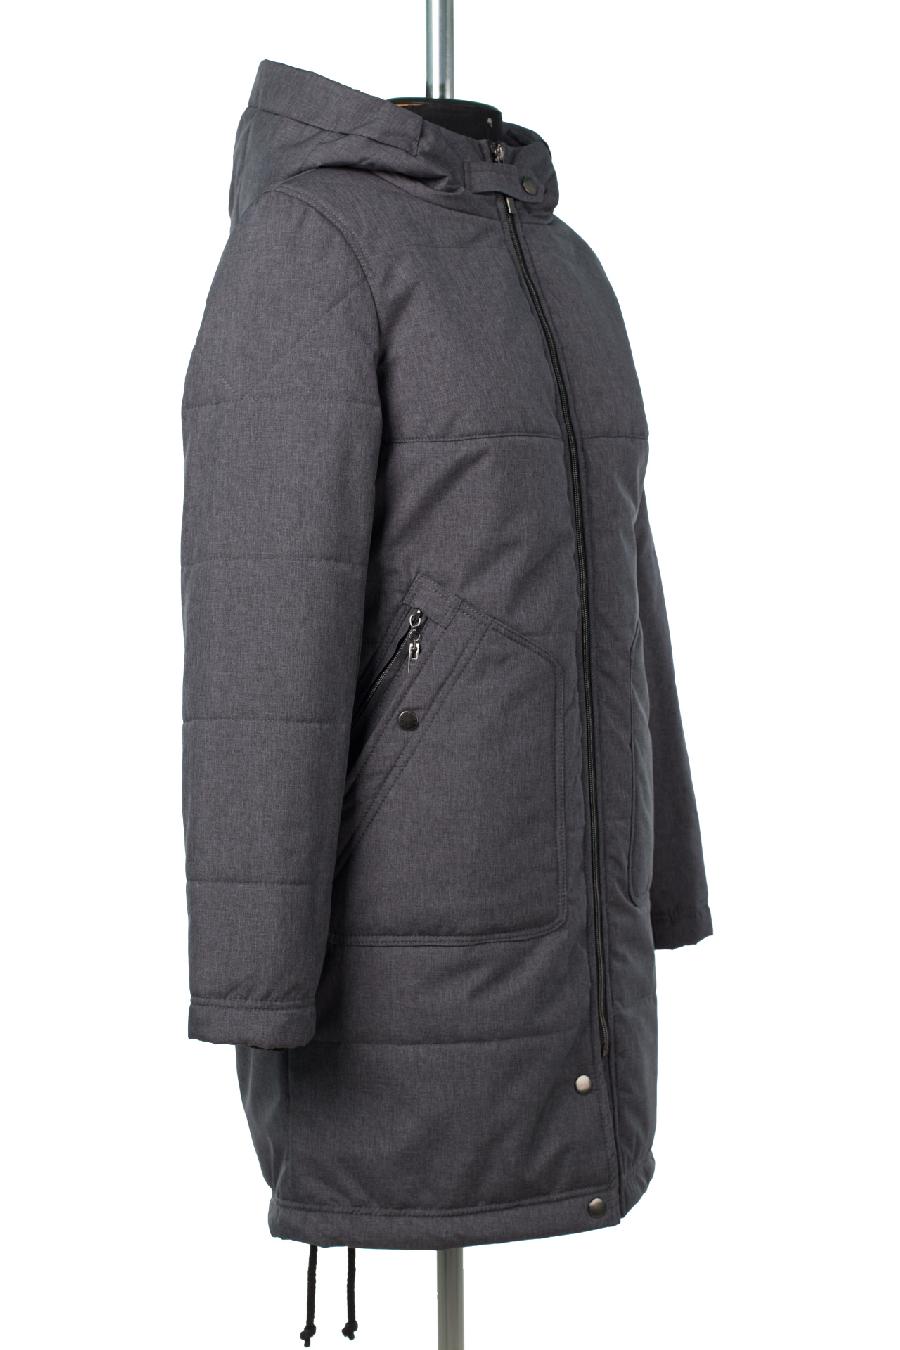 04-2807 Куртка женская демисезонная (Синтепон 150) Плащевка темно-серый